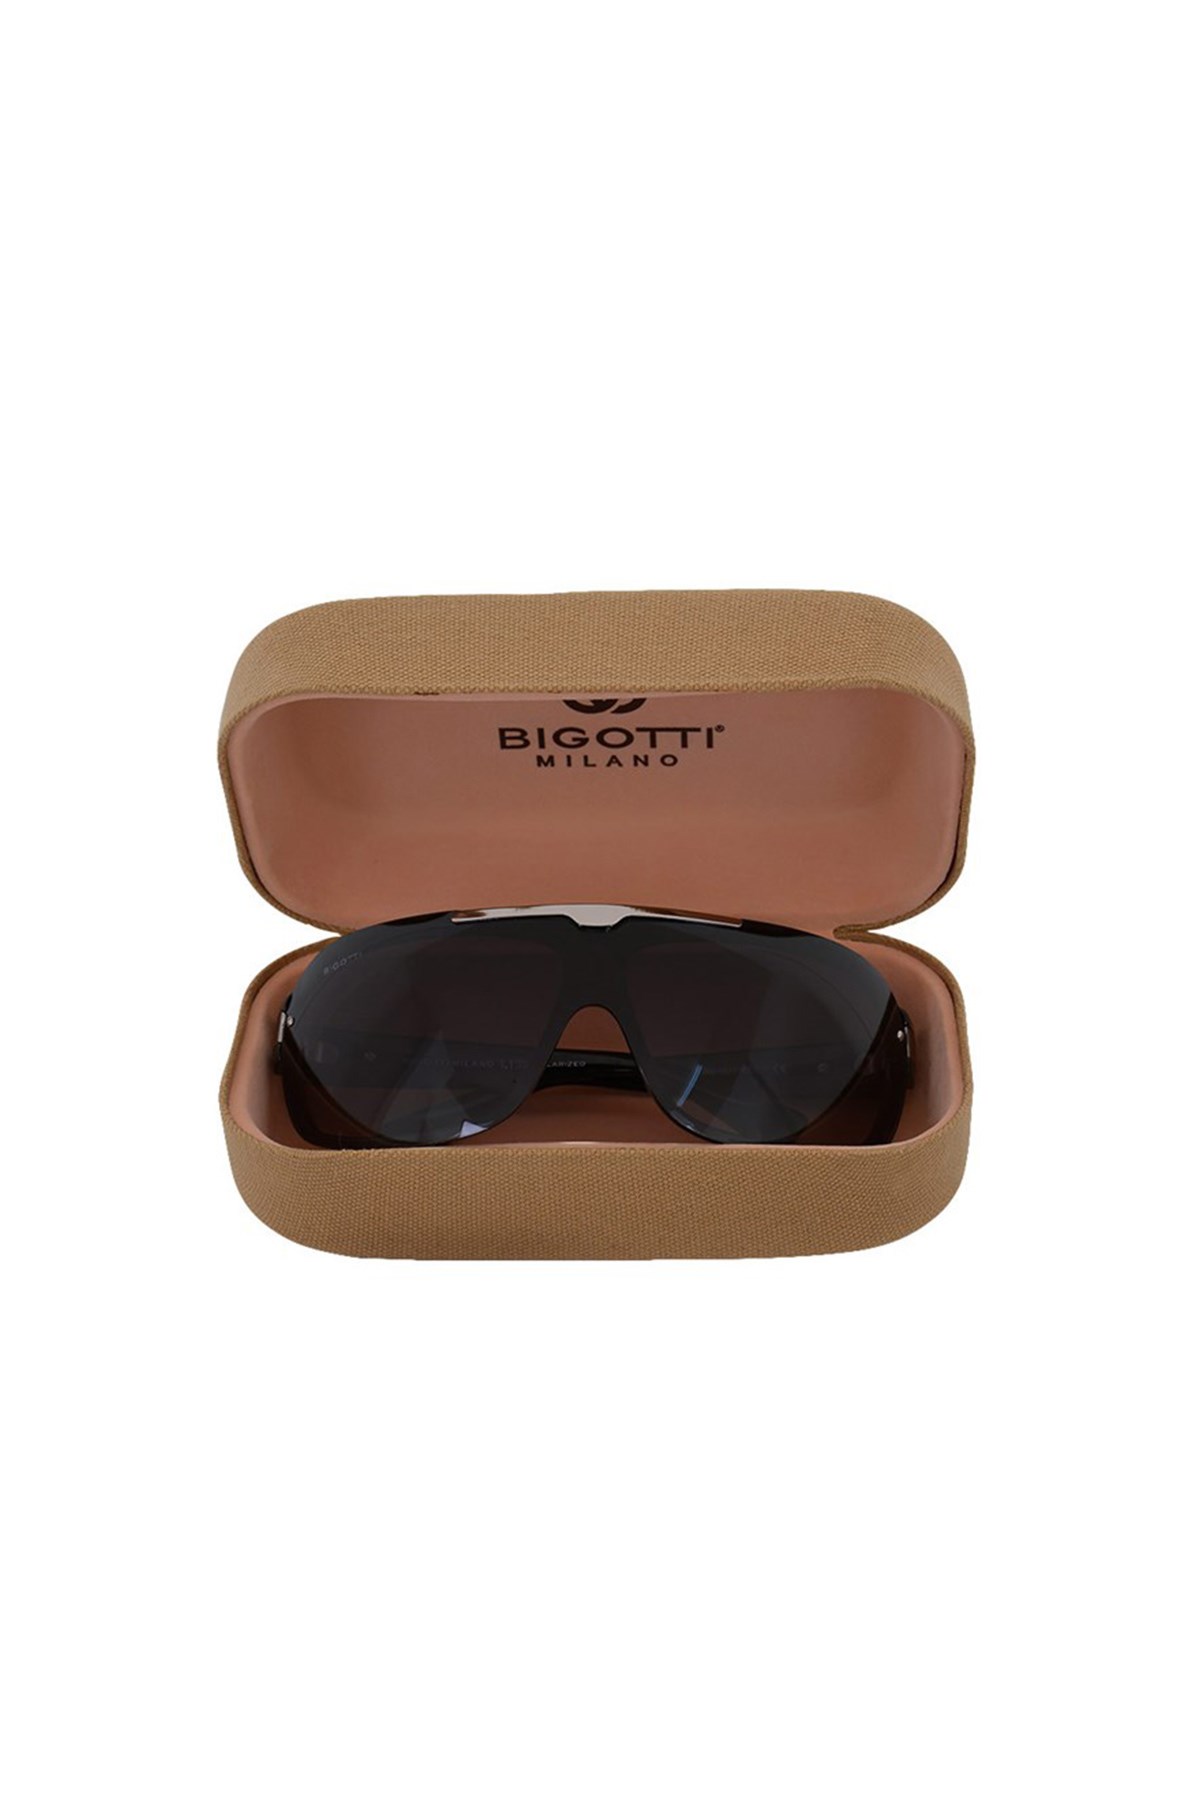 Bigotti Milano Erkek Güneş Gözlüğü - BM1021COL01 | Mossta